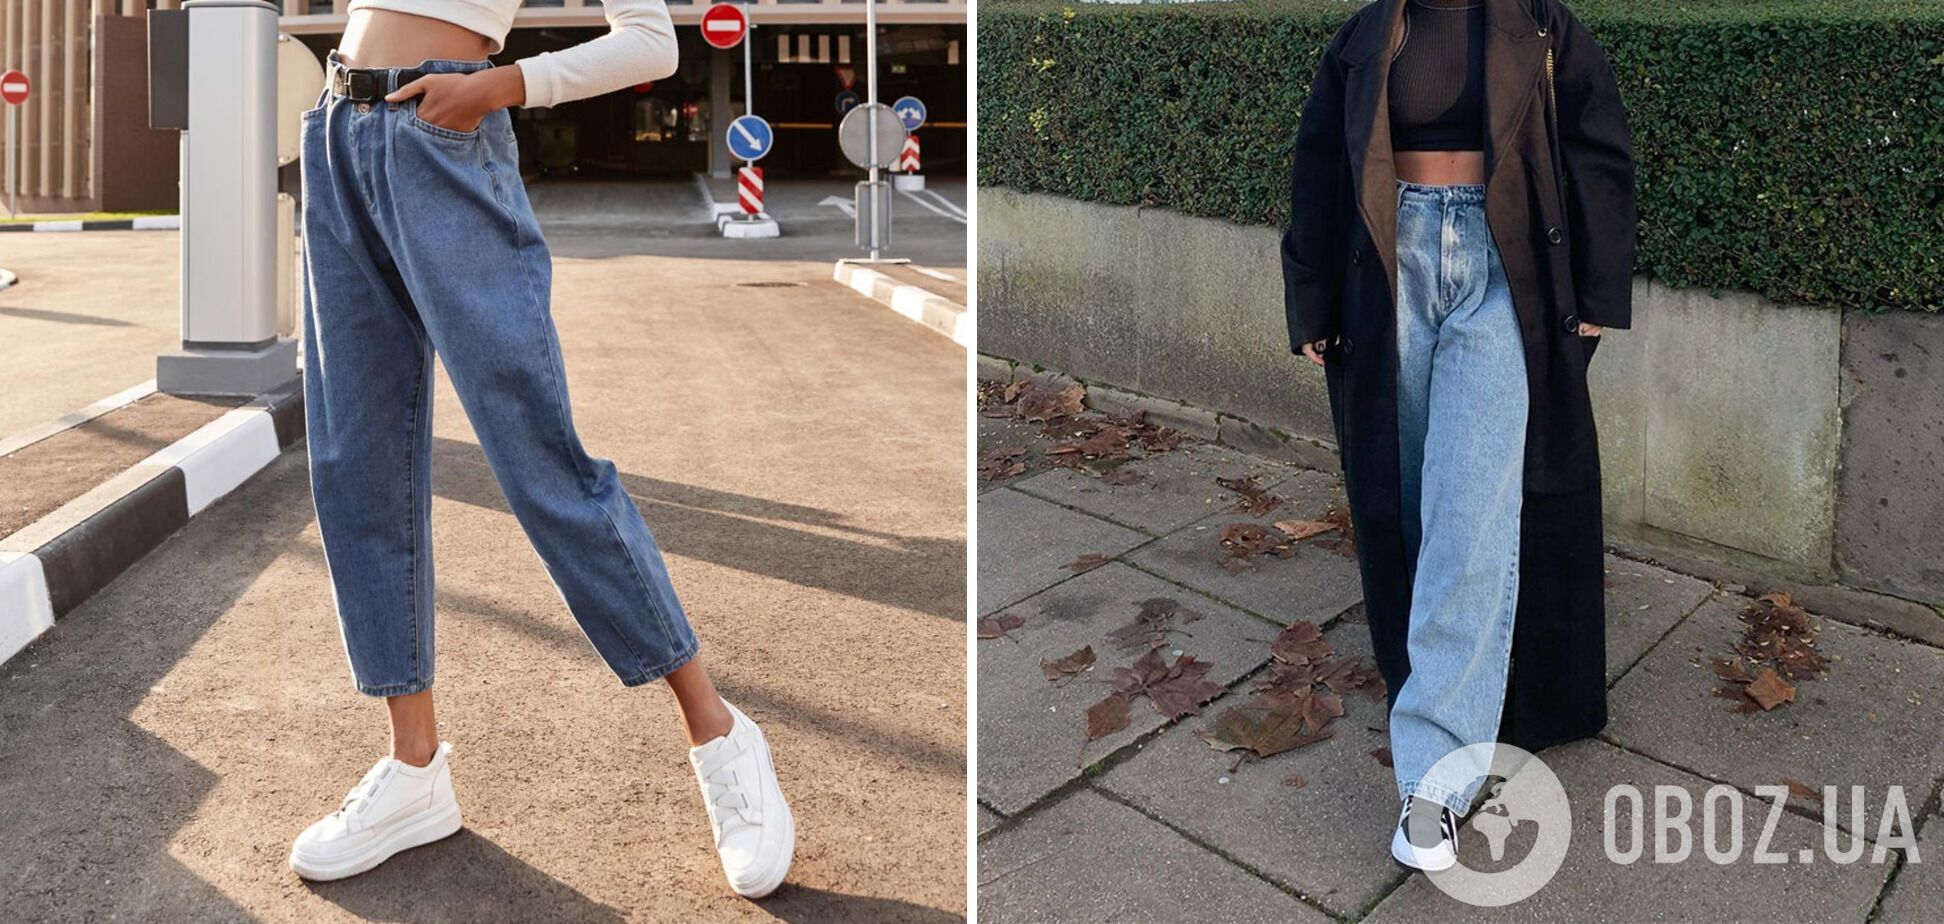 Широкі джинси – один із забутих трендів